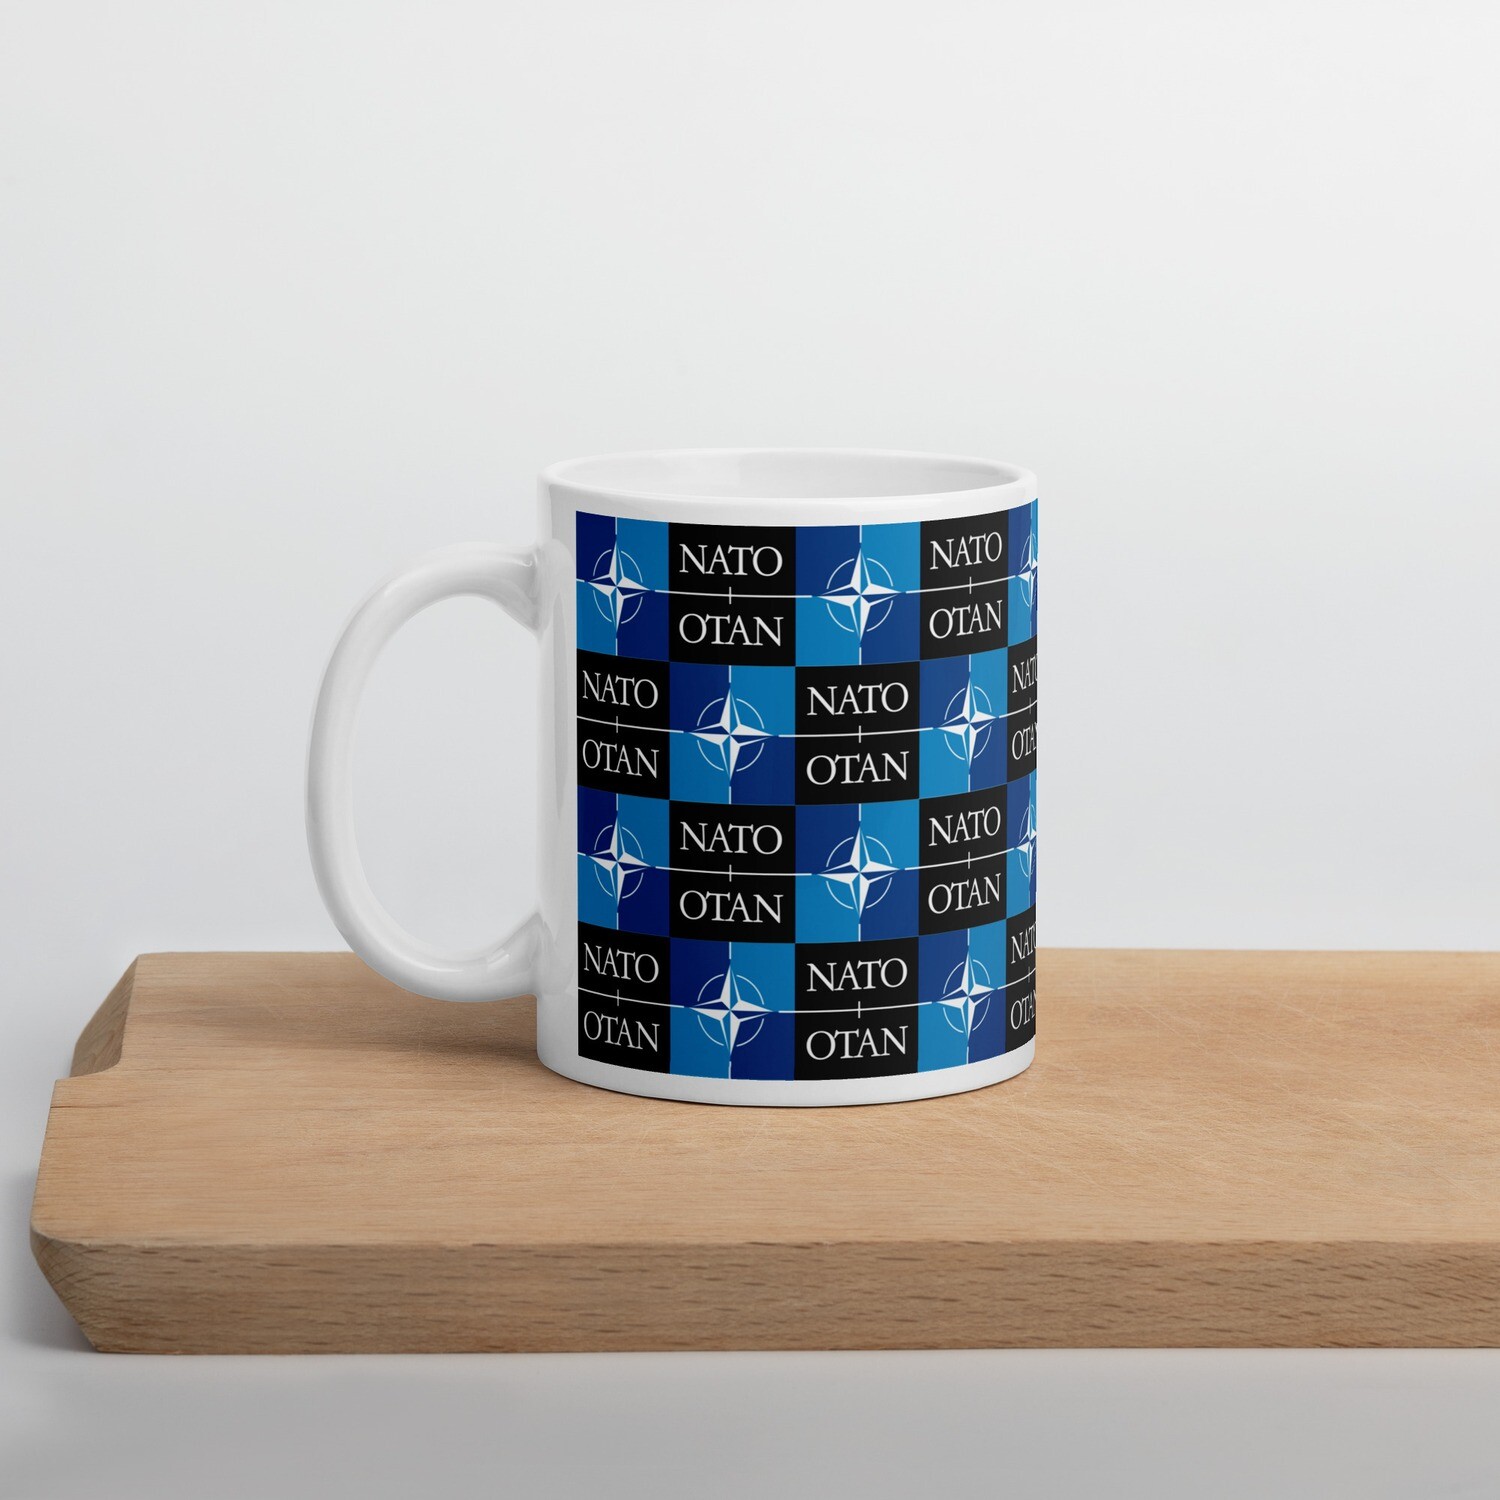 NATO Ceramic Mug